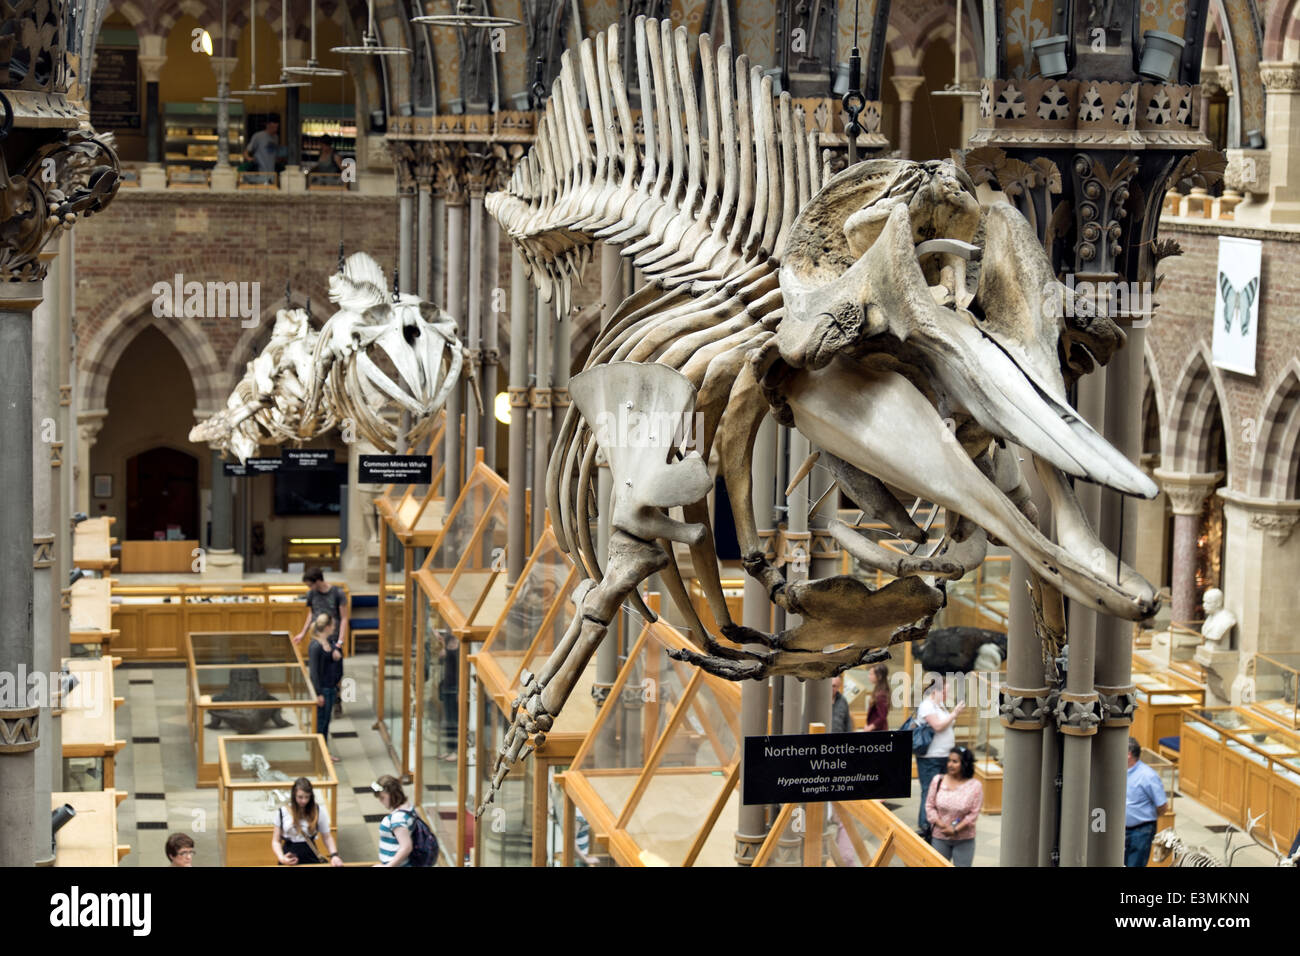 Los esqueletos de ballena expuesta en una fila colgando en el interior del museo de historia natural de Oxford, Oxford, Reino Unido Foto de stock